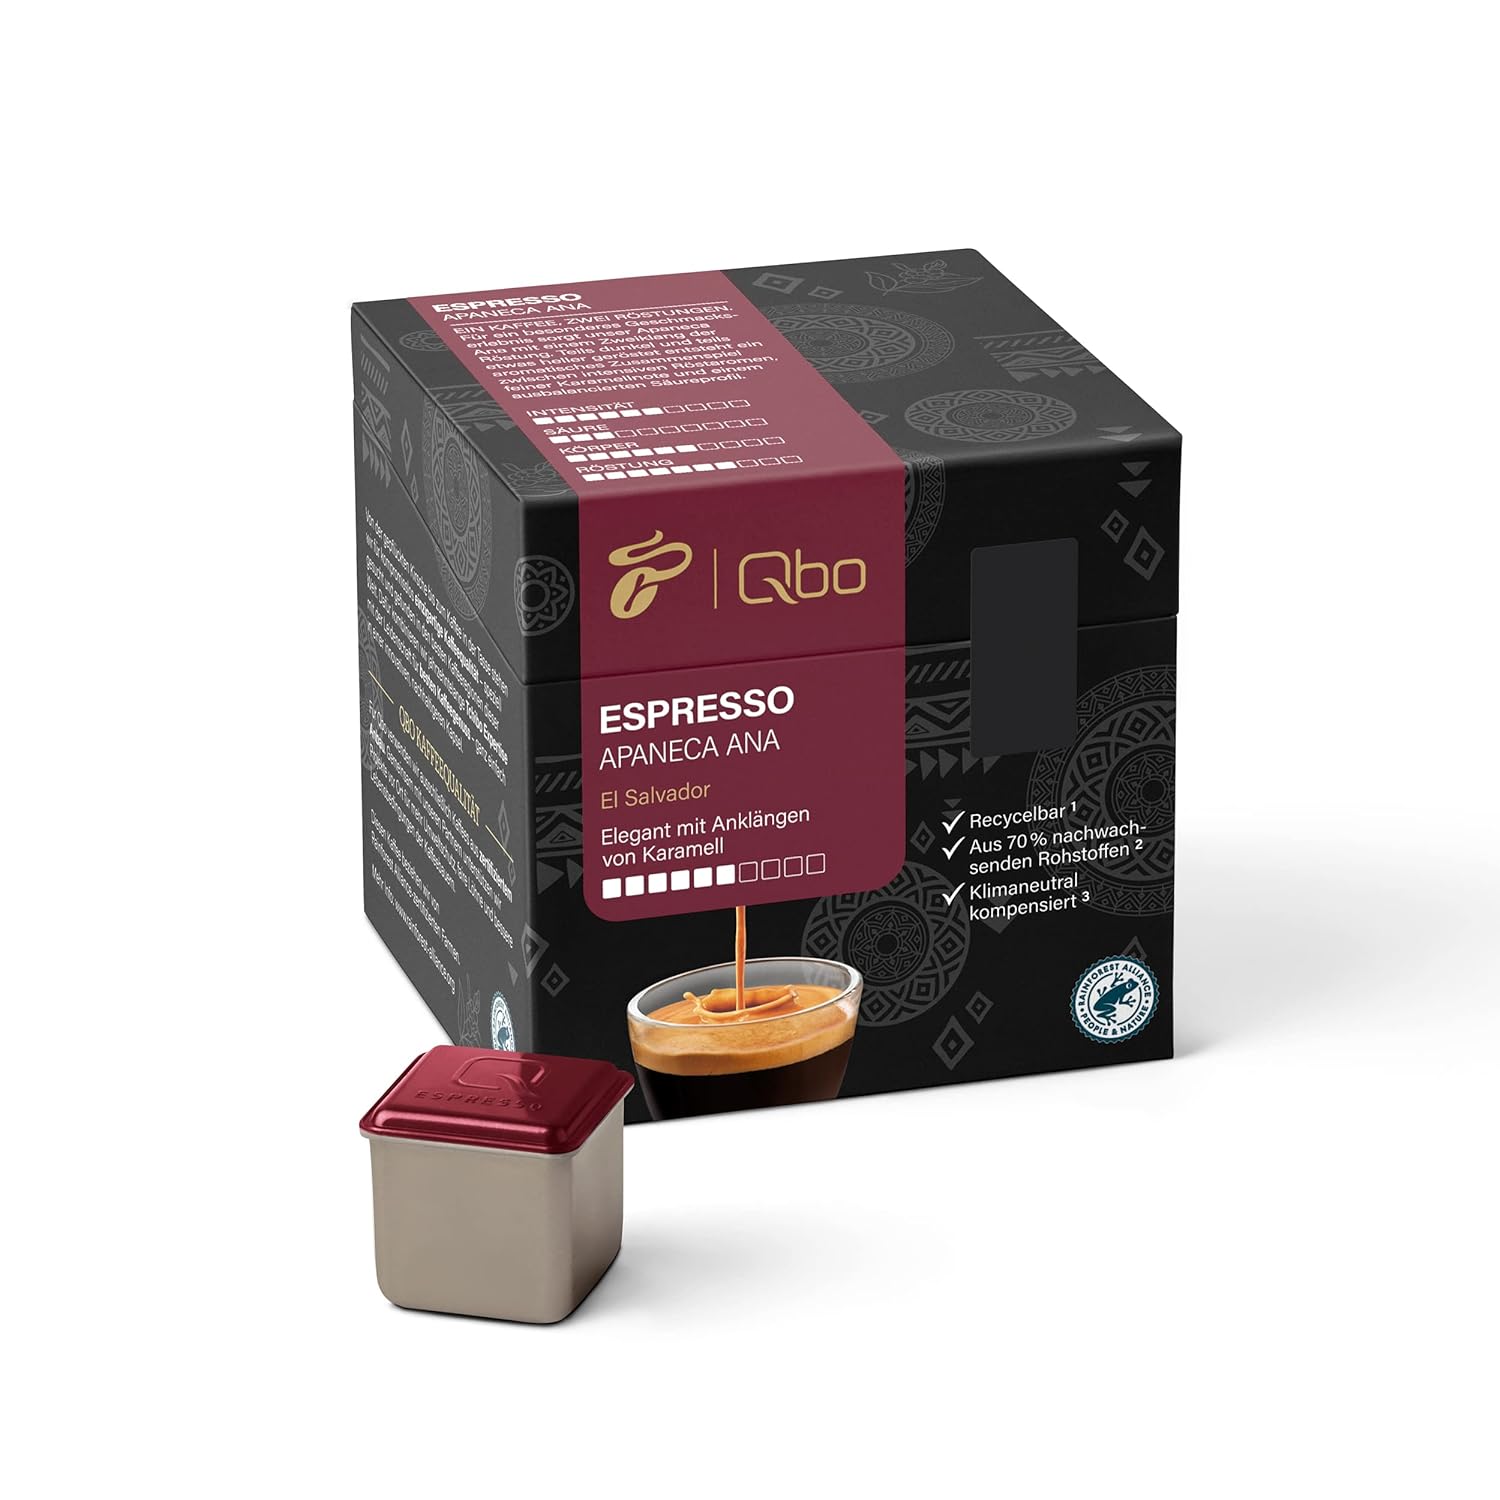 Tchibo Qbo Espresso Apaneca Ana Premium Kaffeekapseln, 216 Stück – 8x27 Kapseln (Espresso, Intensität 5/10, elegant mit Karamellnote), nachhaltig, aus 70% nachwachsenden Rohstoffen